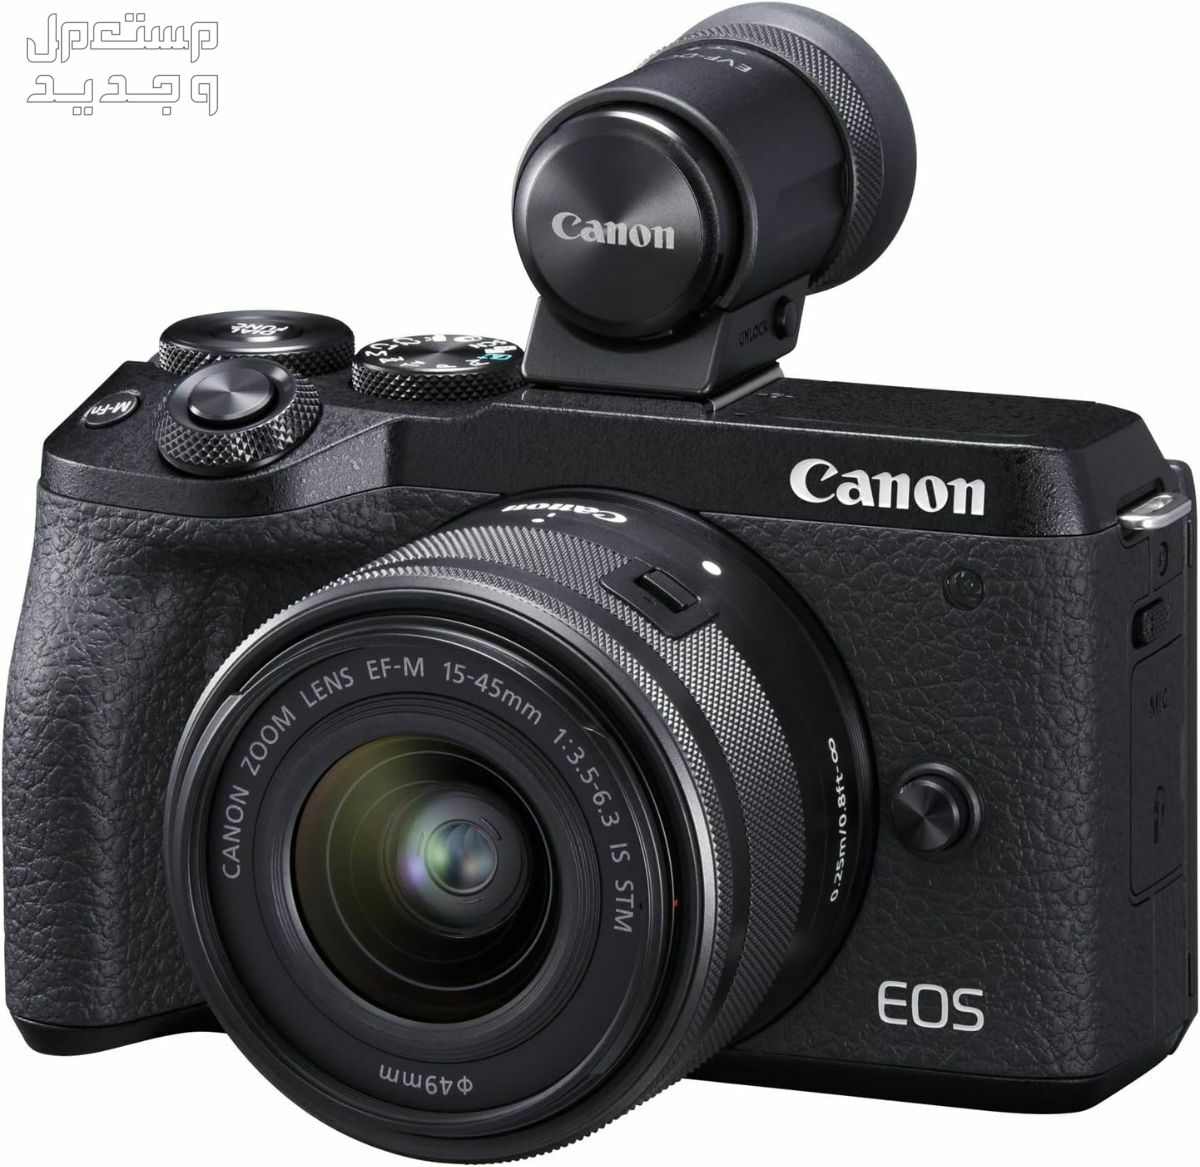 سعر ومميزات ومواصفات أرخص 5 كاميرات تصوير من كانون في عمان كاميرا Canon EOS M6 Mark II